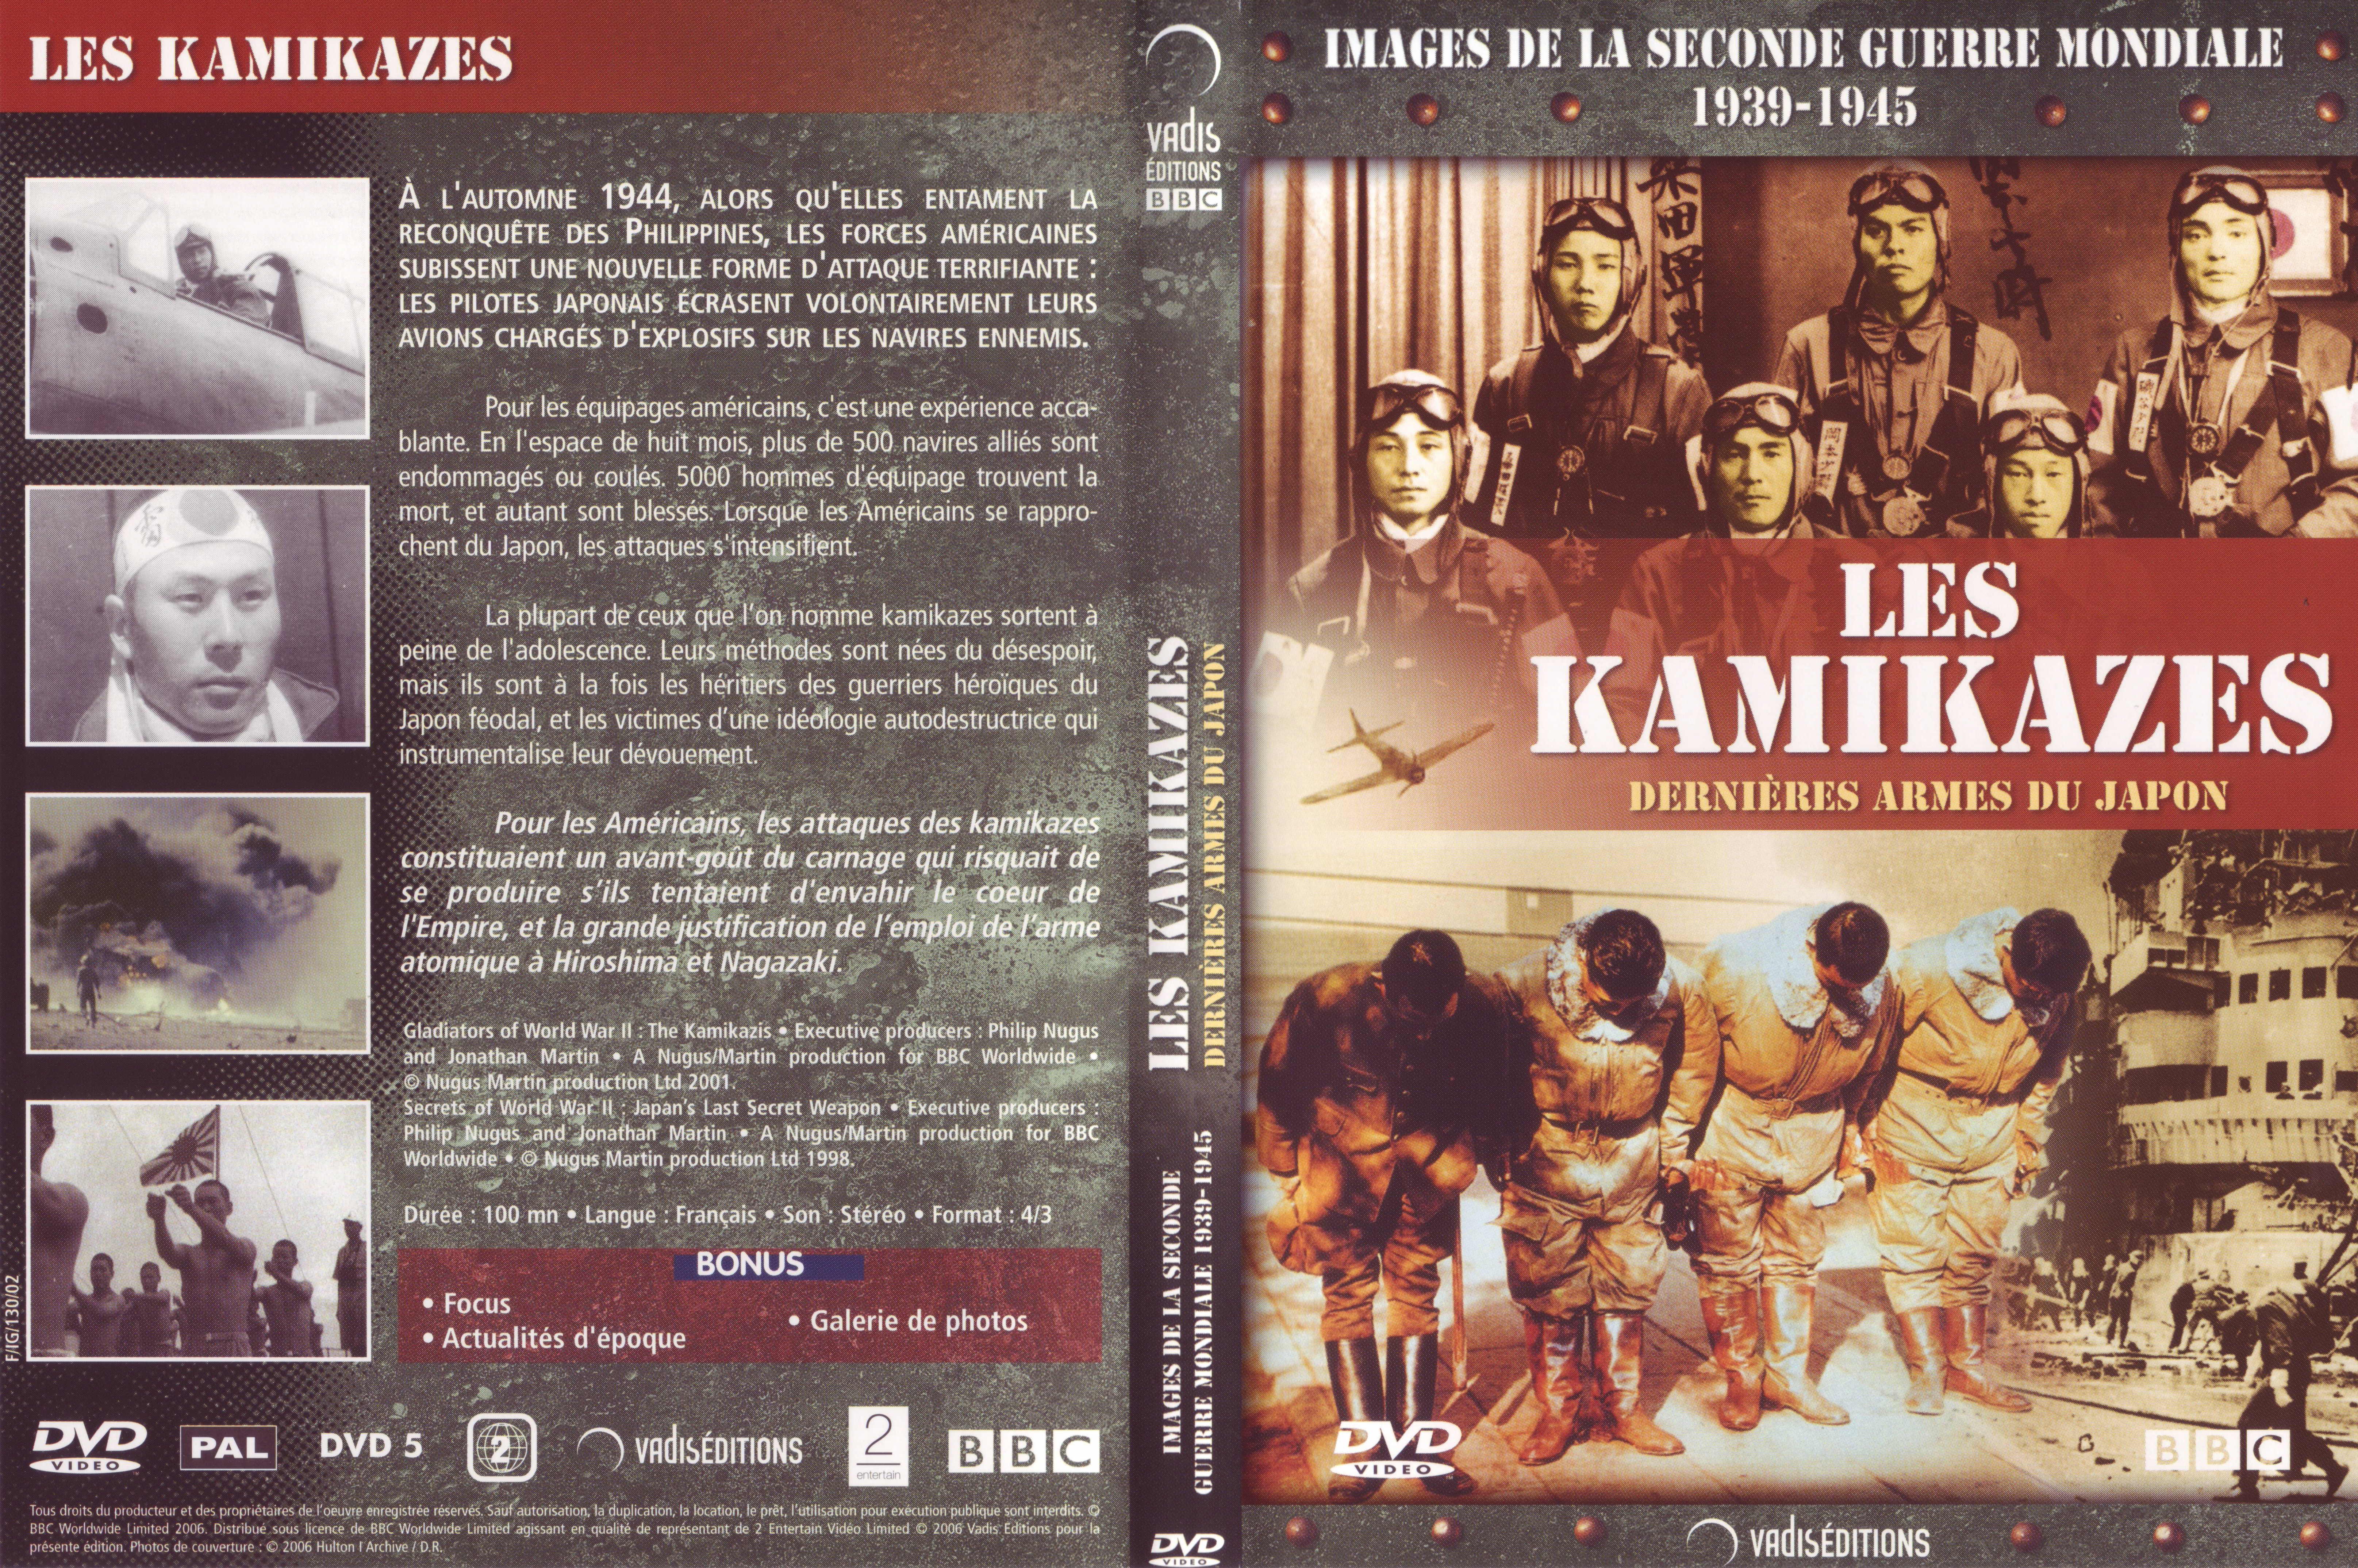 Jaquette DVD Images de la seconde guerre mondiale - Les Kamikazes